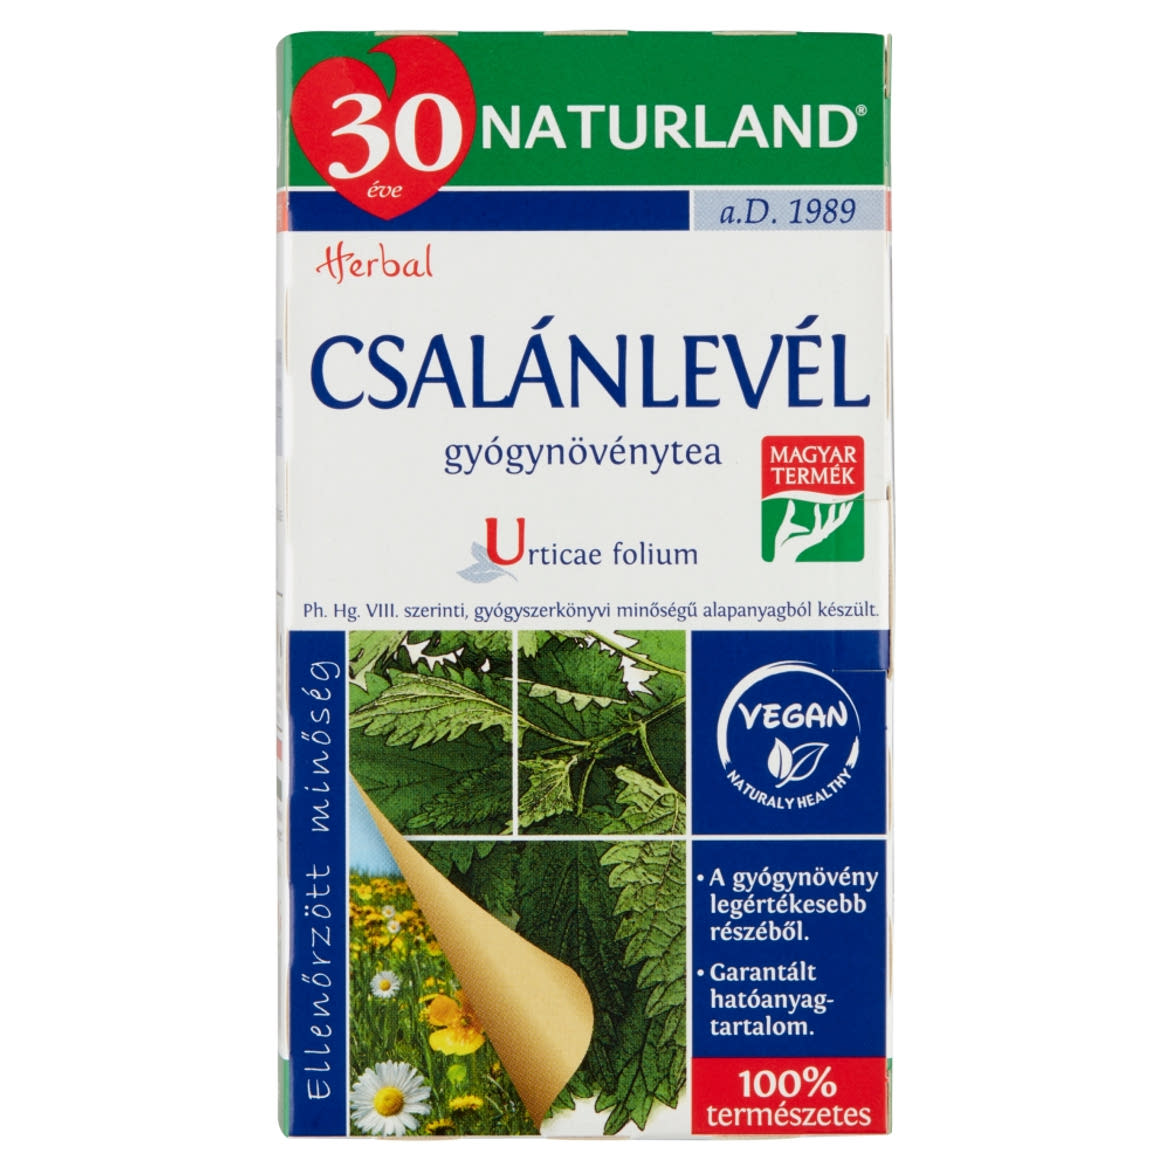 Naturland Herbal csalánlevél gyógynövénytea